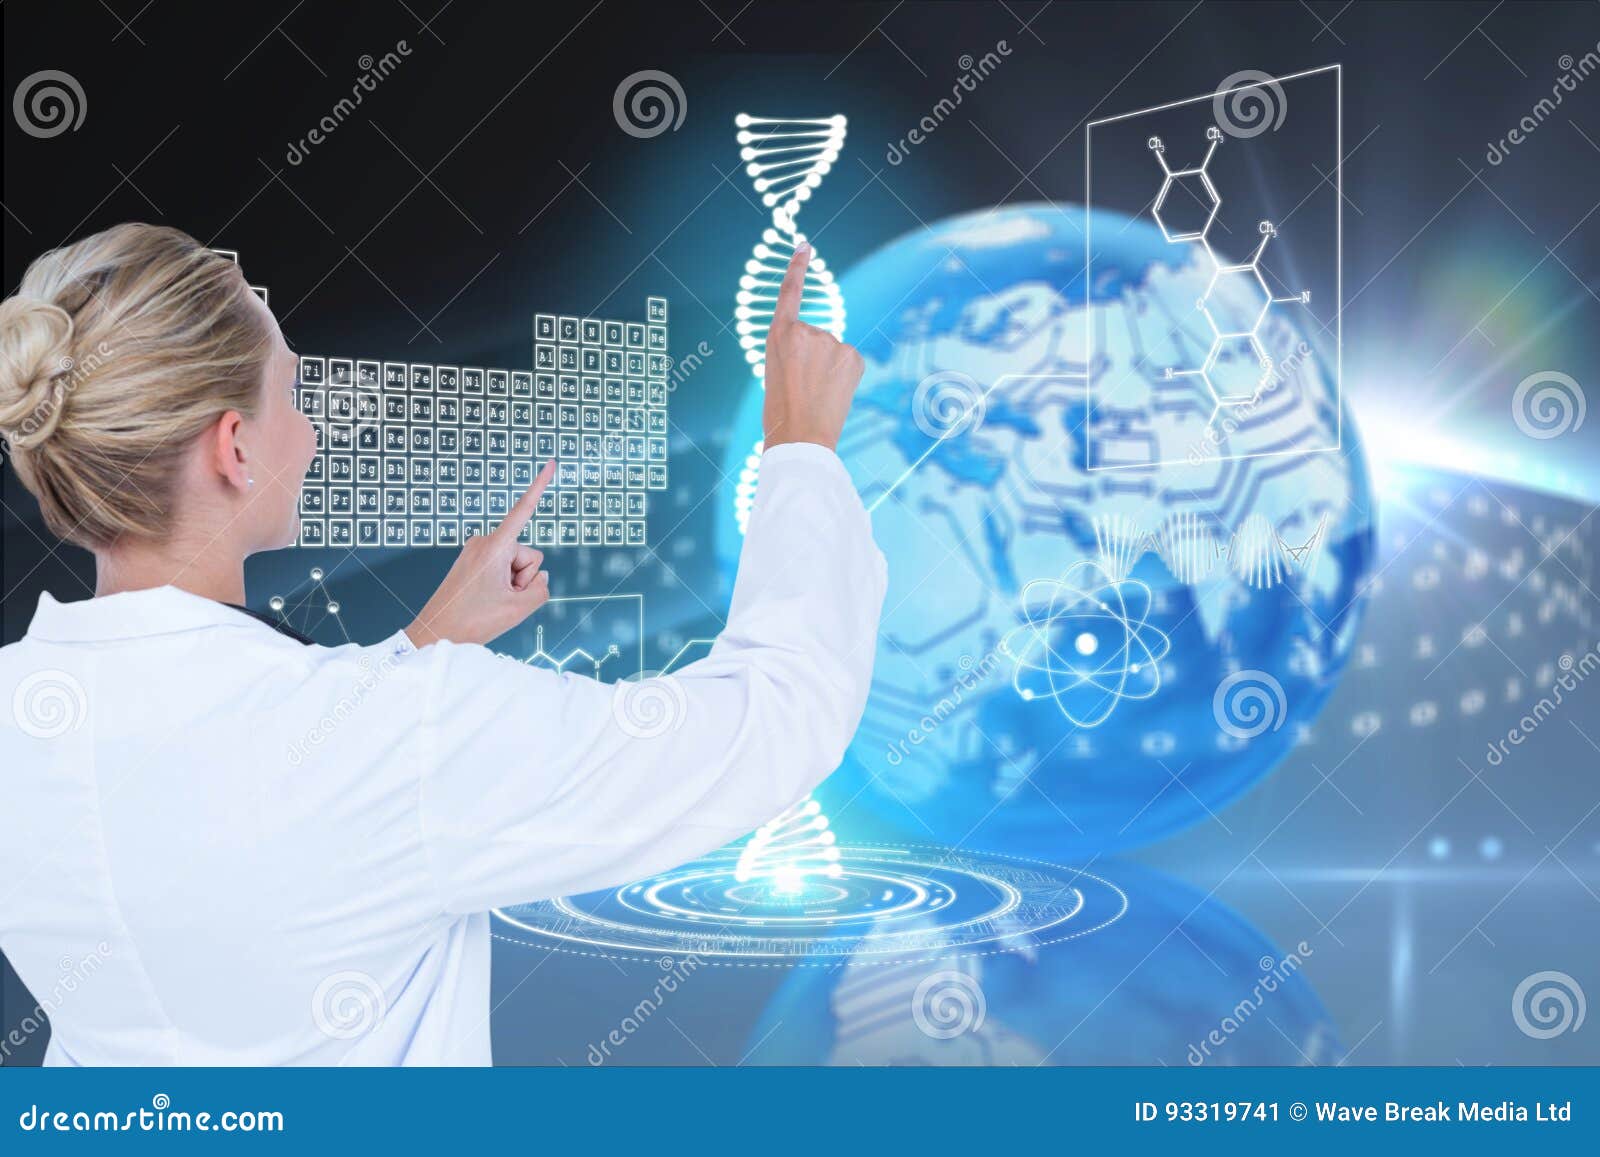 Modelos médicos contra fundos dos gráficos do ADN. Composto de Digitas de modelos médicos com gráficos ou fundos do ADN